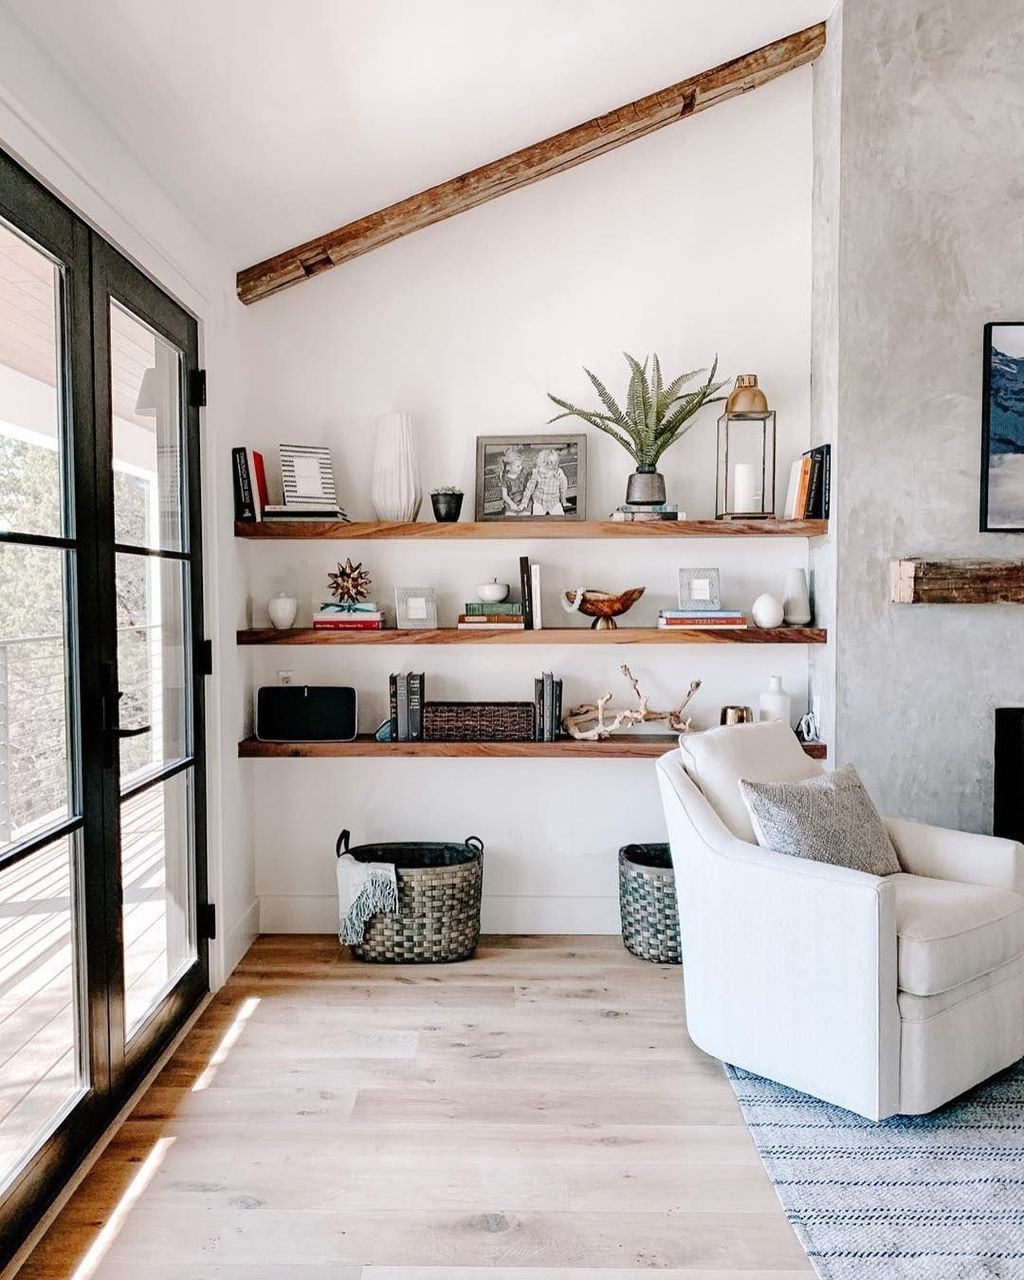 Living Room Shelves Ideas
 35 Stunning Floating Shelves For Living Room Decor Ideas